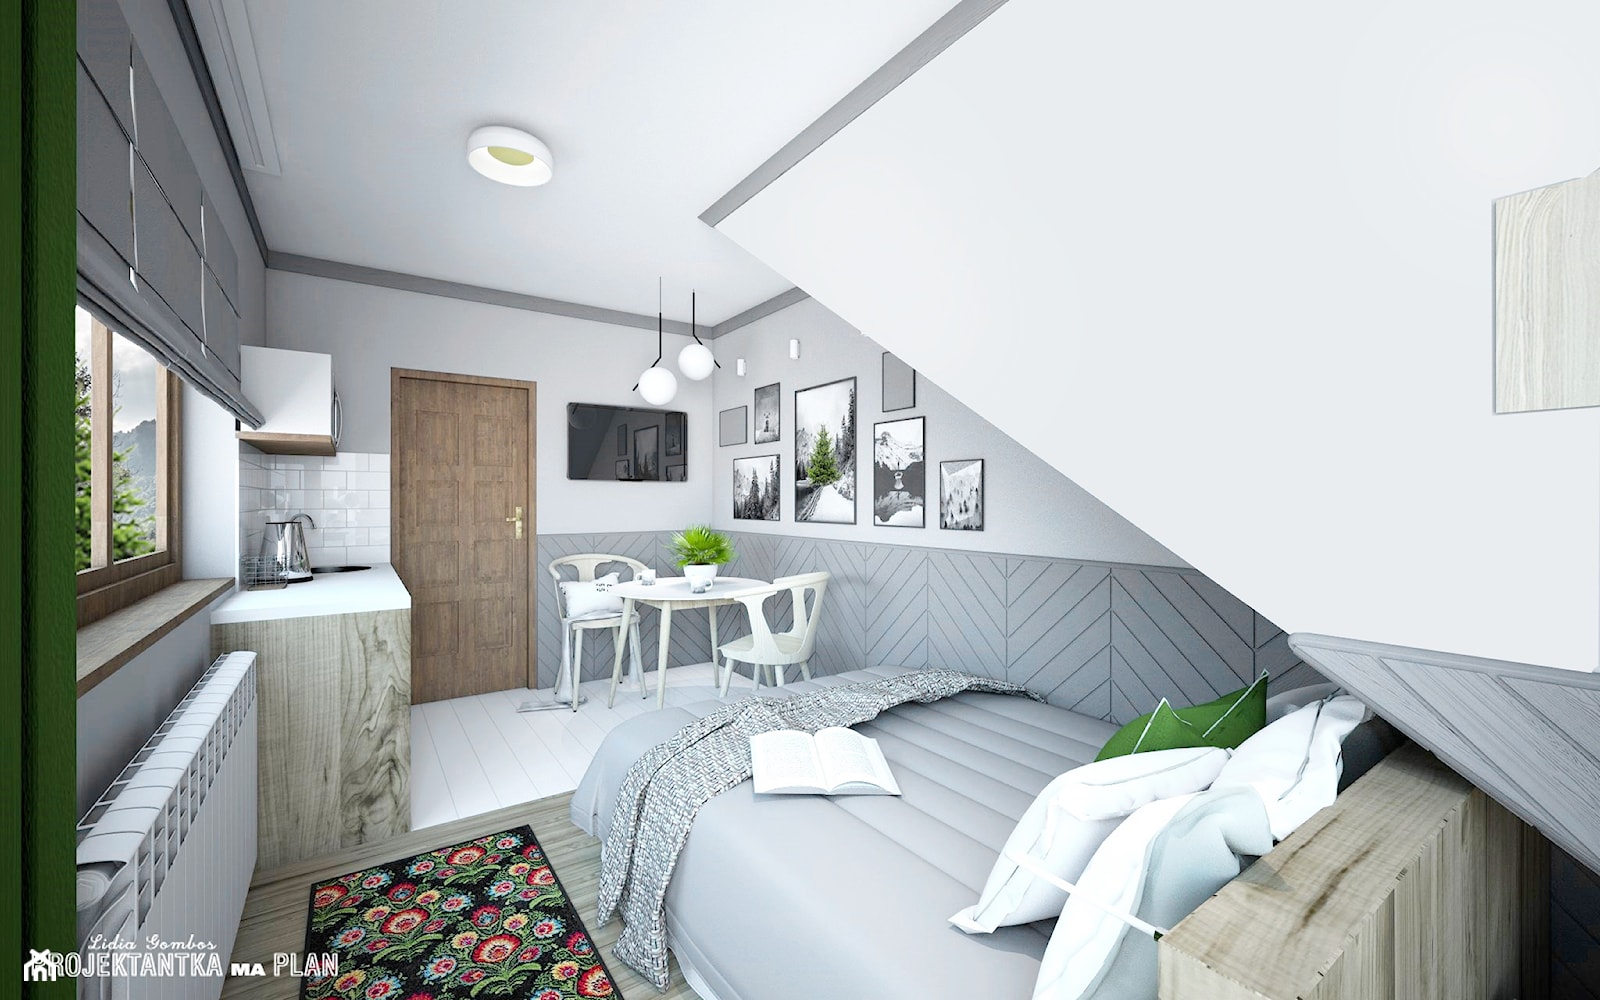 APARTAMENT GREY - ZAKOPANE na wynajem krótkoterminowy - Średnia biała szara sypialnia na poddaszu, styl skandynawski - zdjęcie od Projektantka ma PLAN - Homebook